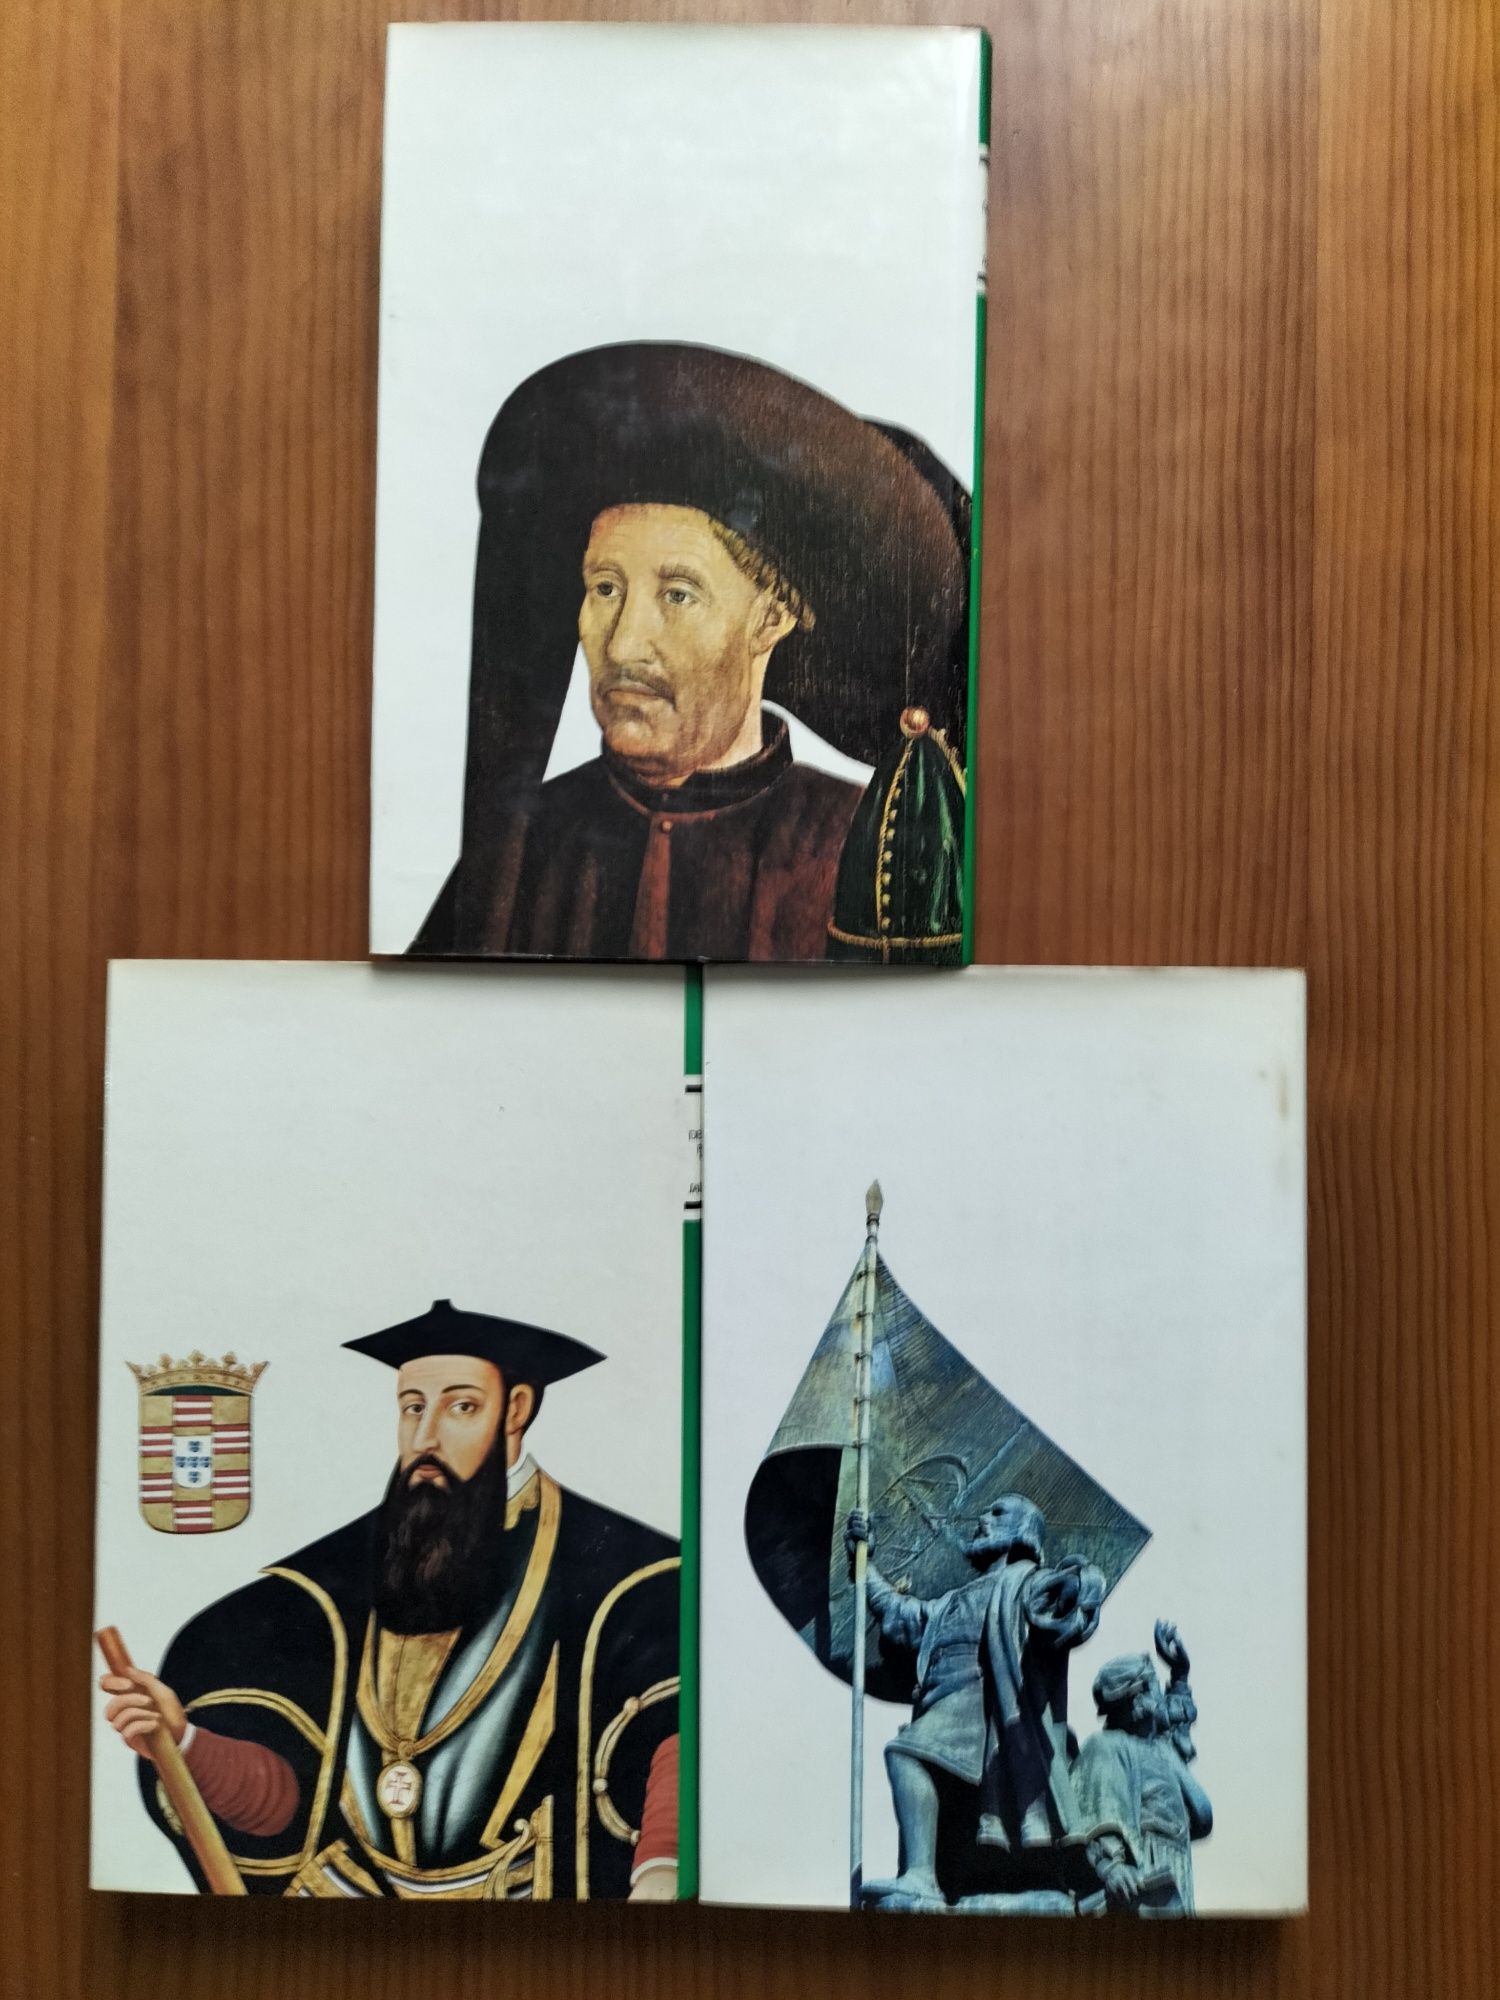 Livros história dos descobrimentos portugueses de Jaime cortesão